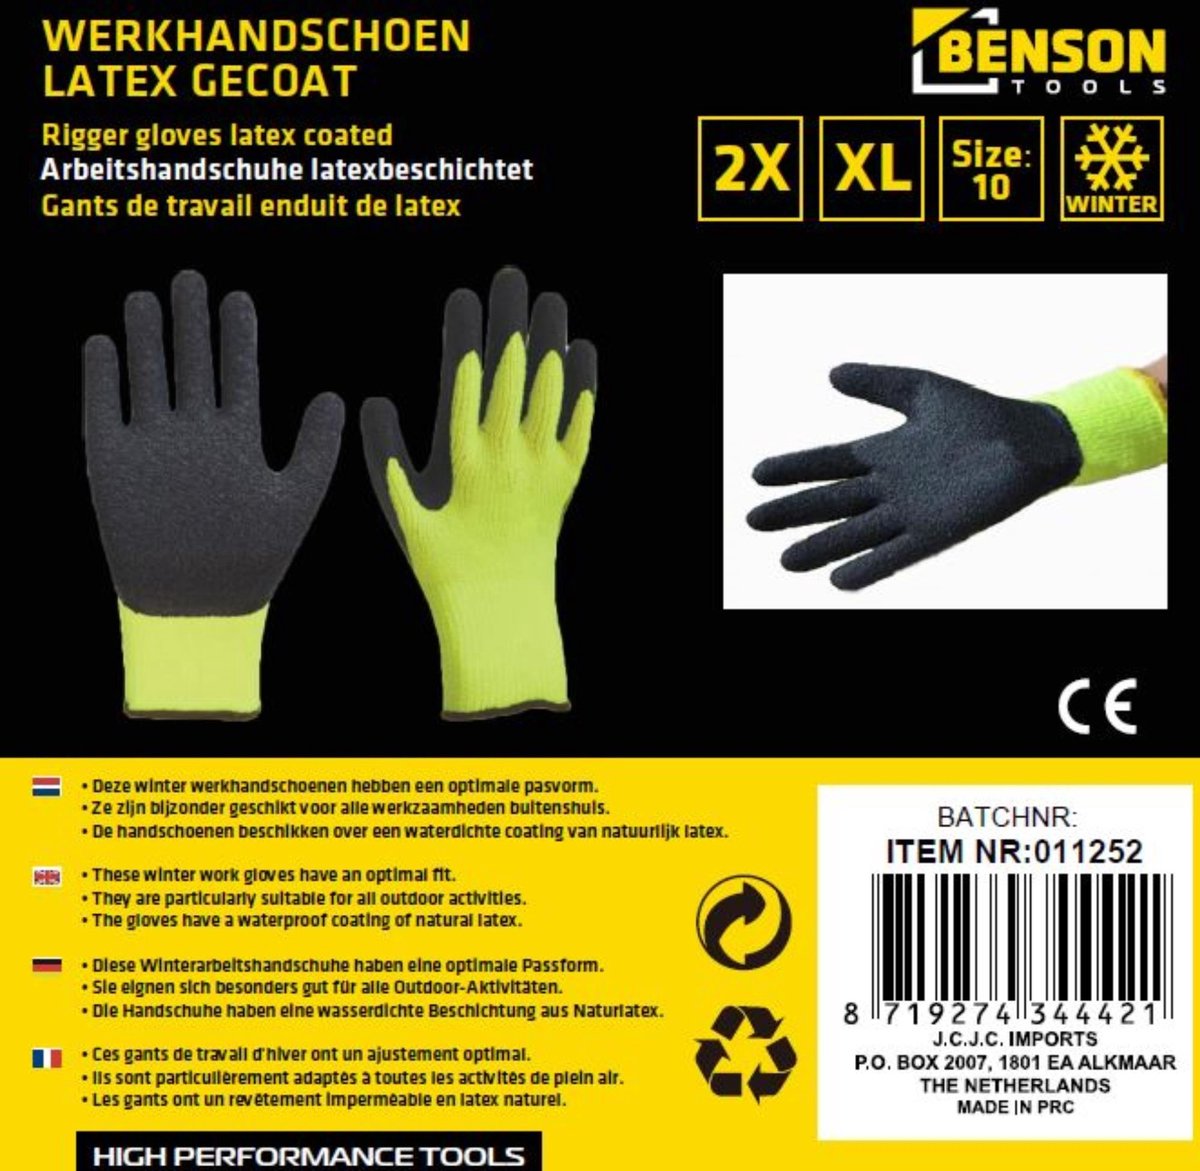 Benson Winterhandschoenen Latex Grip Gebreide Neon - Geel - XL - Maat 10 /  1 paar | bol.com